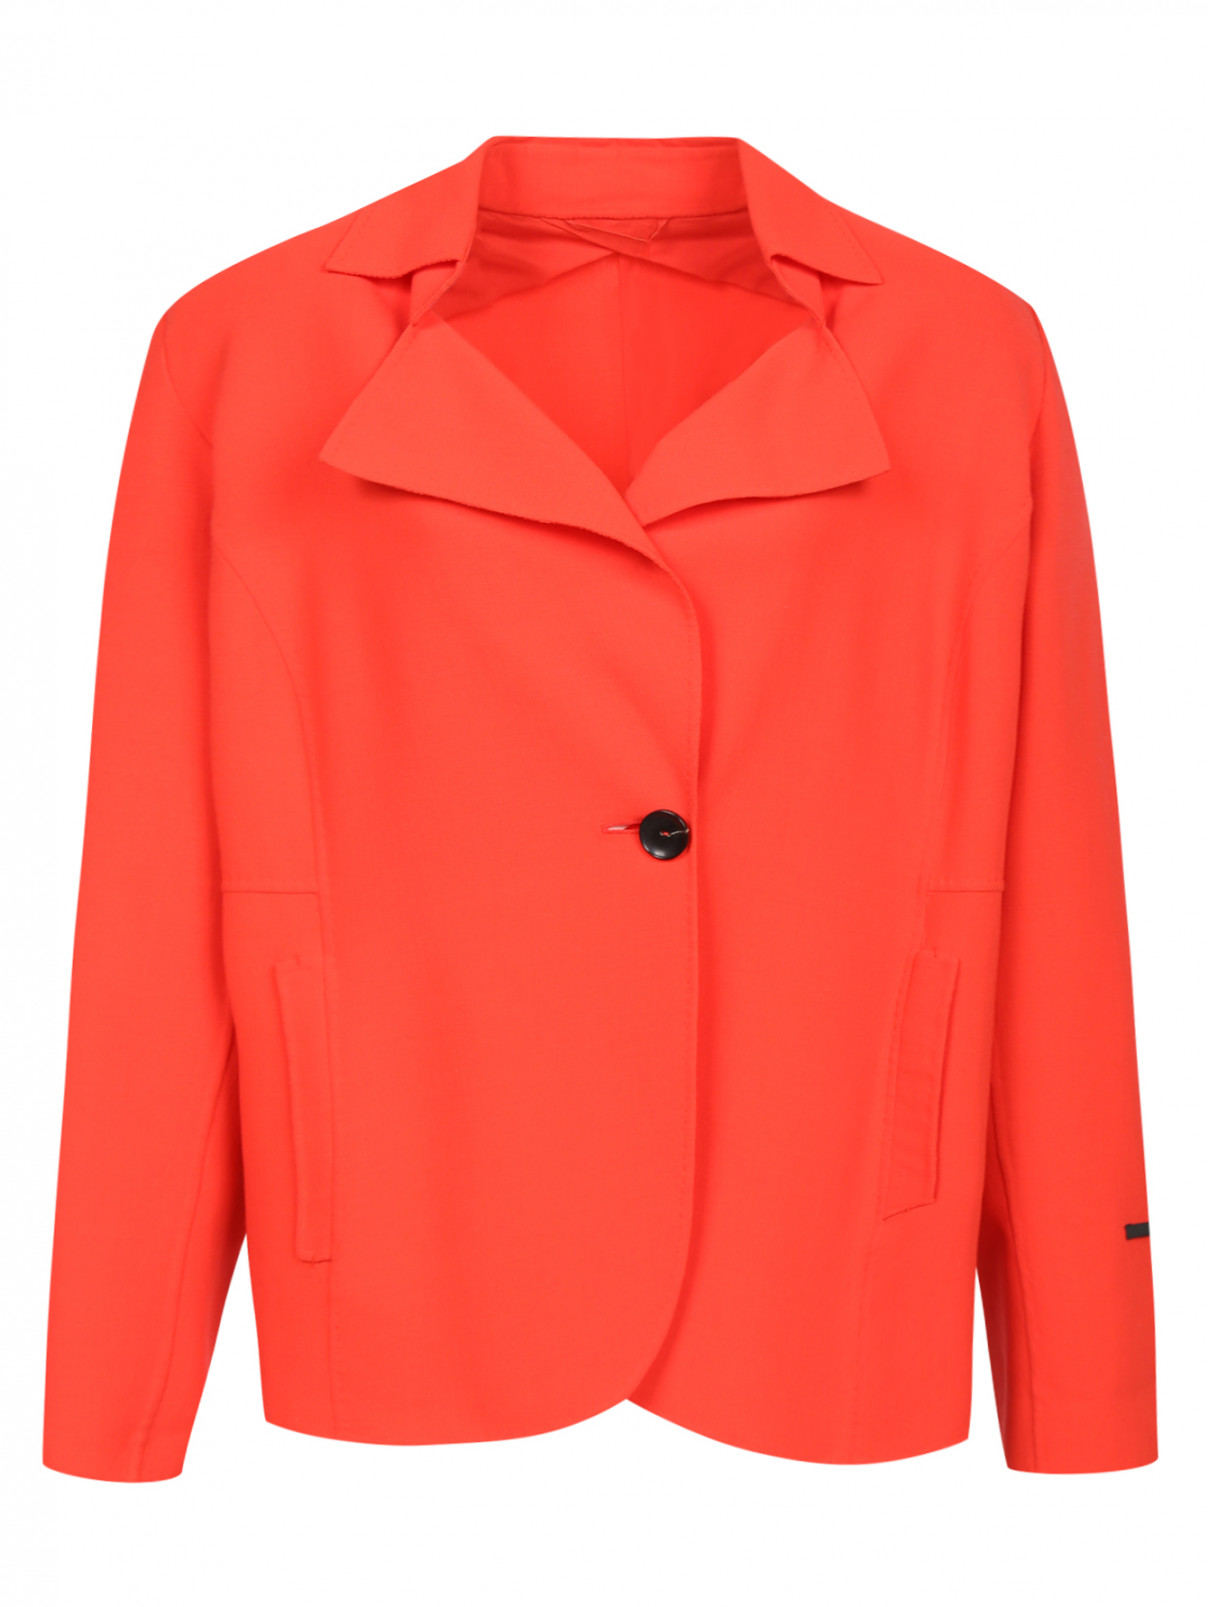 Однобортный жакет с боковыми карманами Marina Rinaldi  –  Общий вид  – Цвет:  Красный